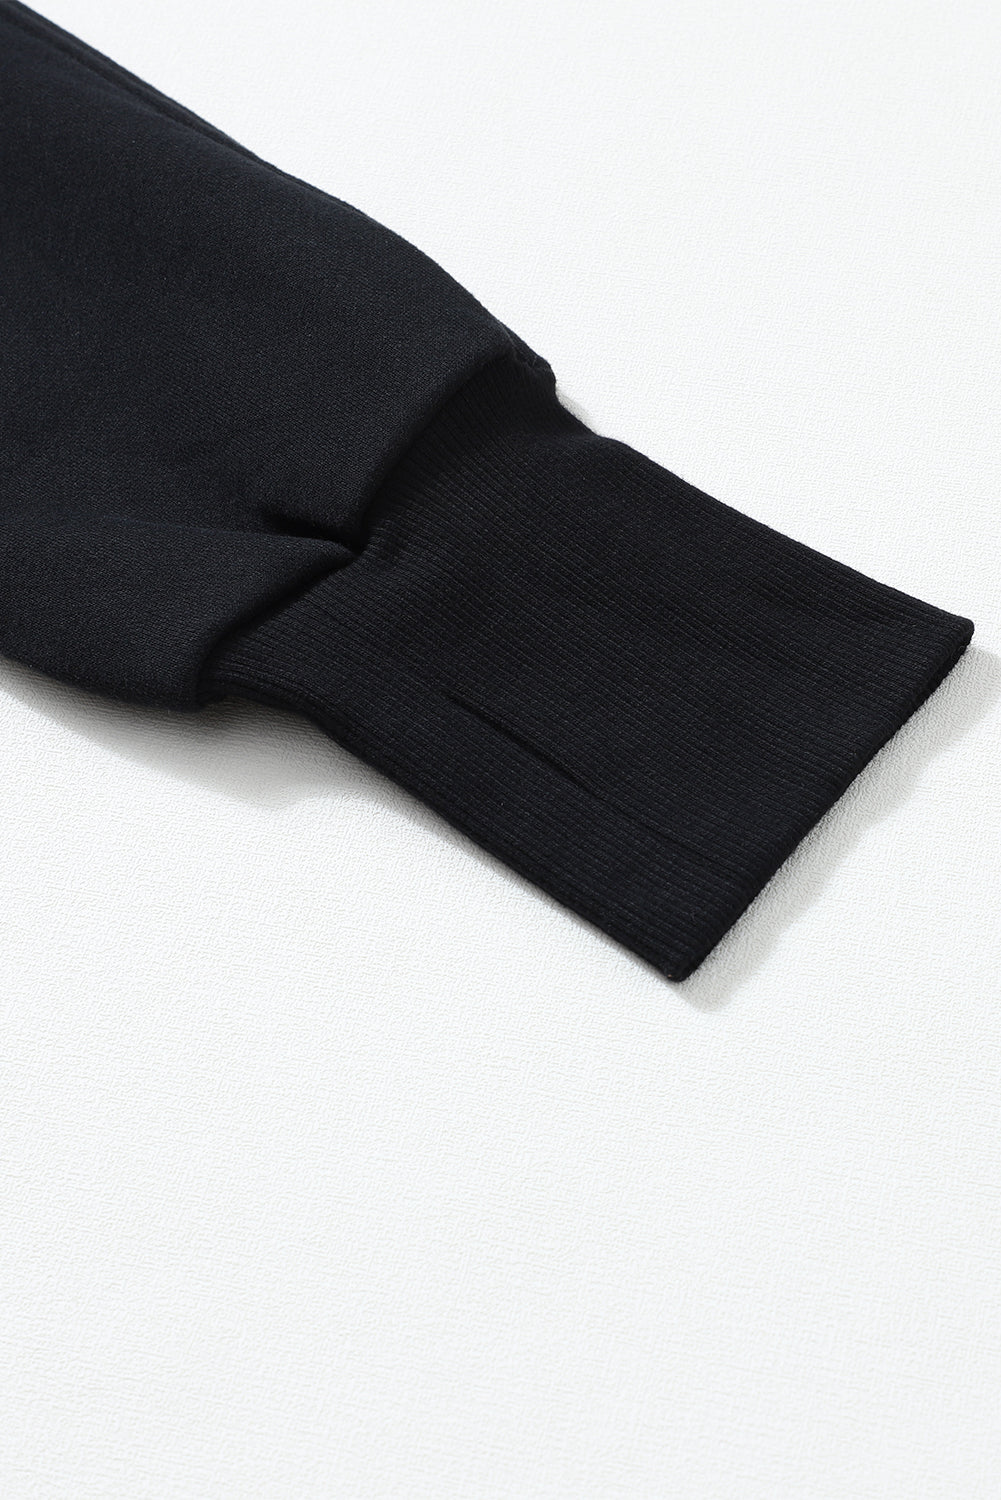 Sweat-shirt noir côtelé à col montant et manches avec trou pour les pouces